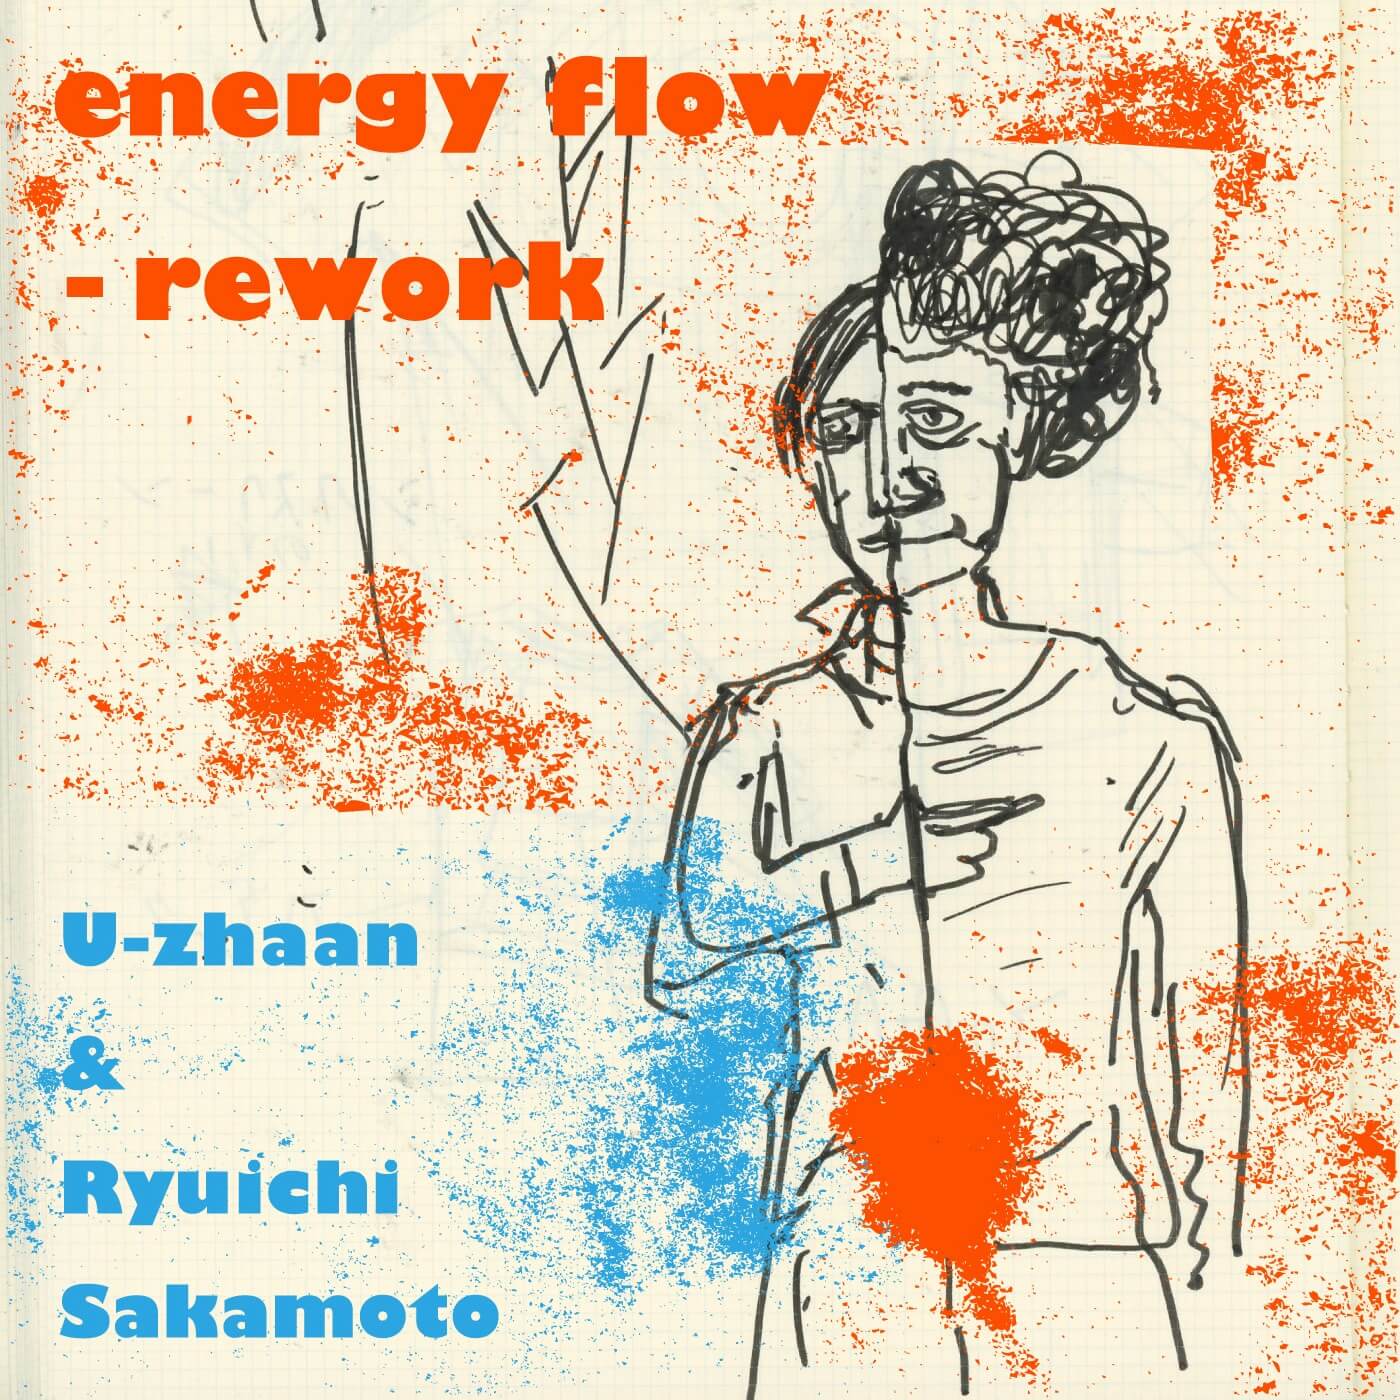 energy flow-rework_JK